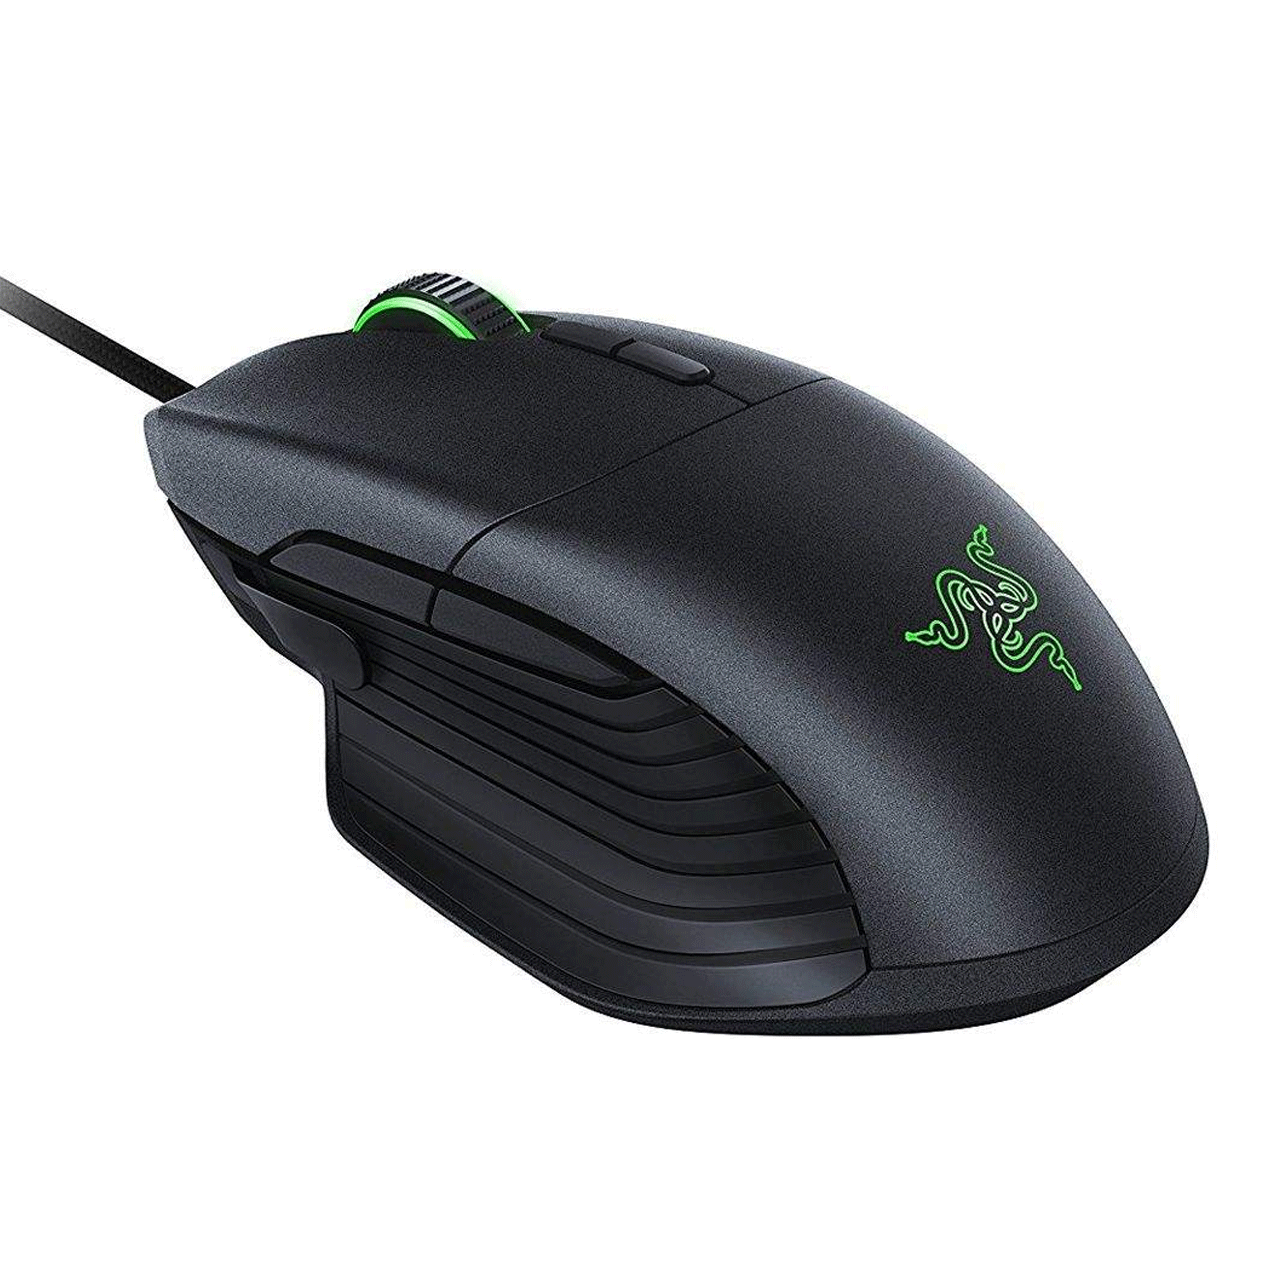 Razer--Basilisk-Gaming-Mouse